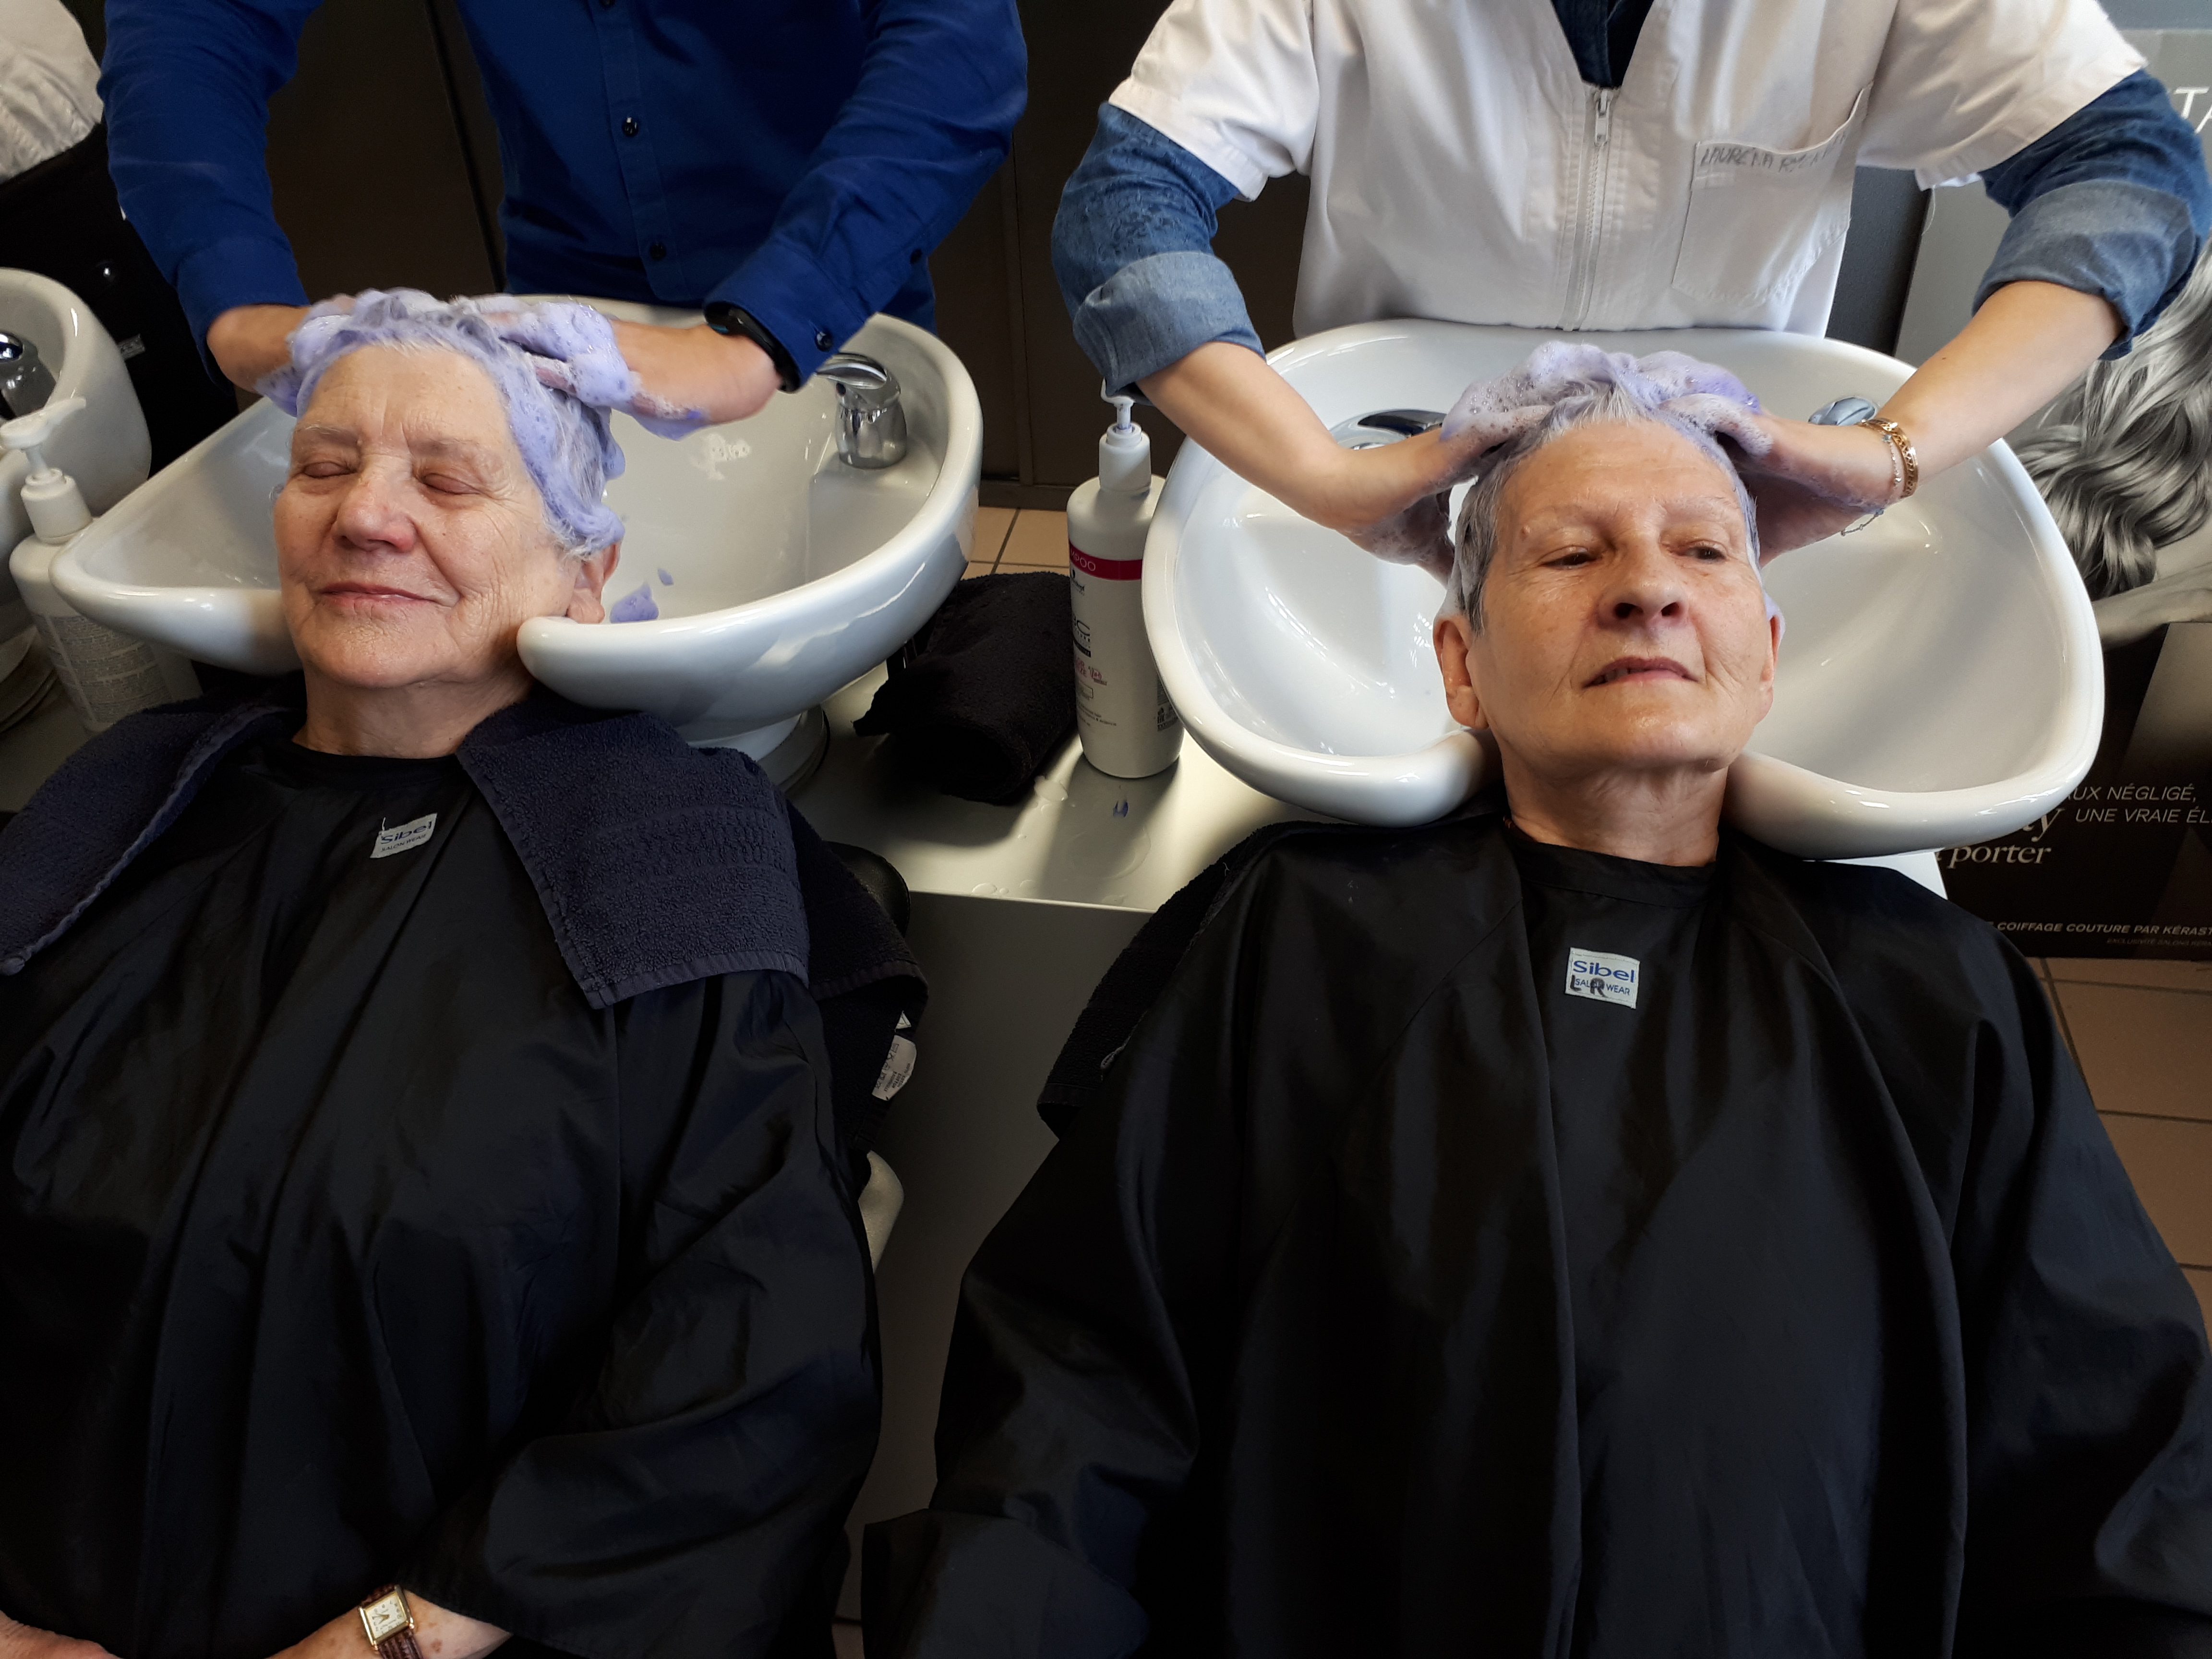 Deux femmes âgées chez le coiffeur, assises en blouse noires, les yeux clos, se font shampouiner. En arrière plan on aperçoit les mains des coiffeuses massant leur cuir cheveulu.   